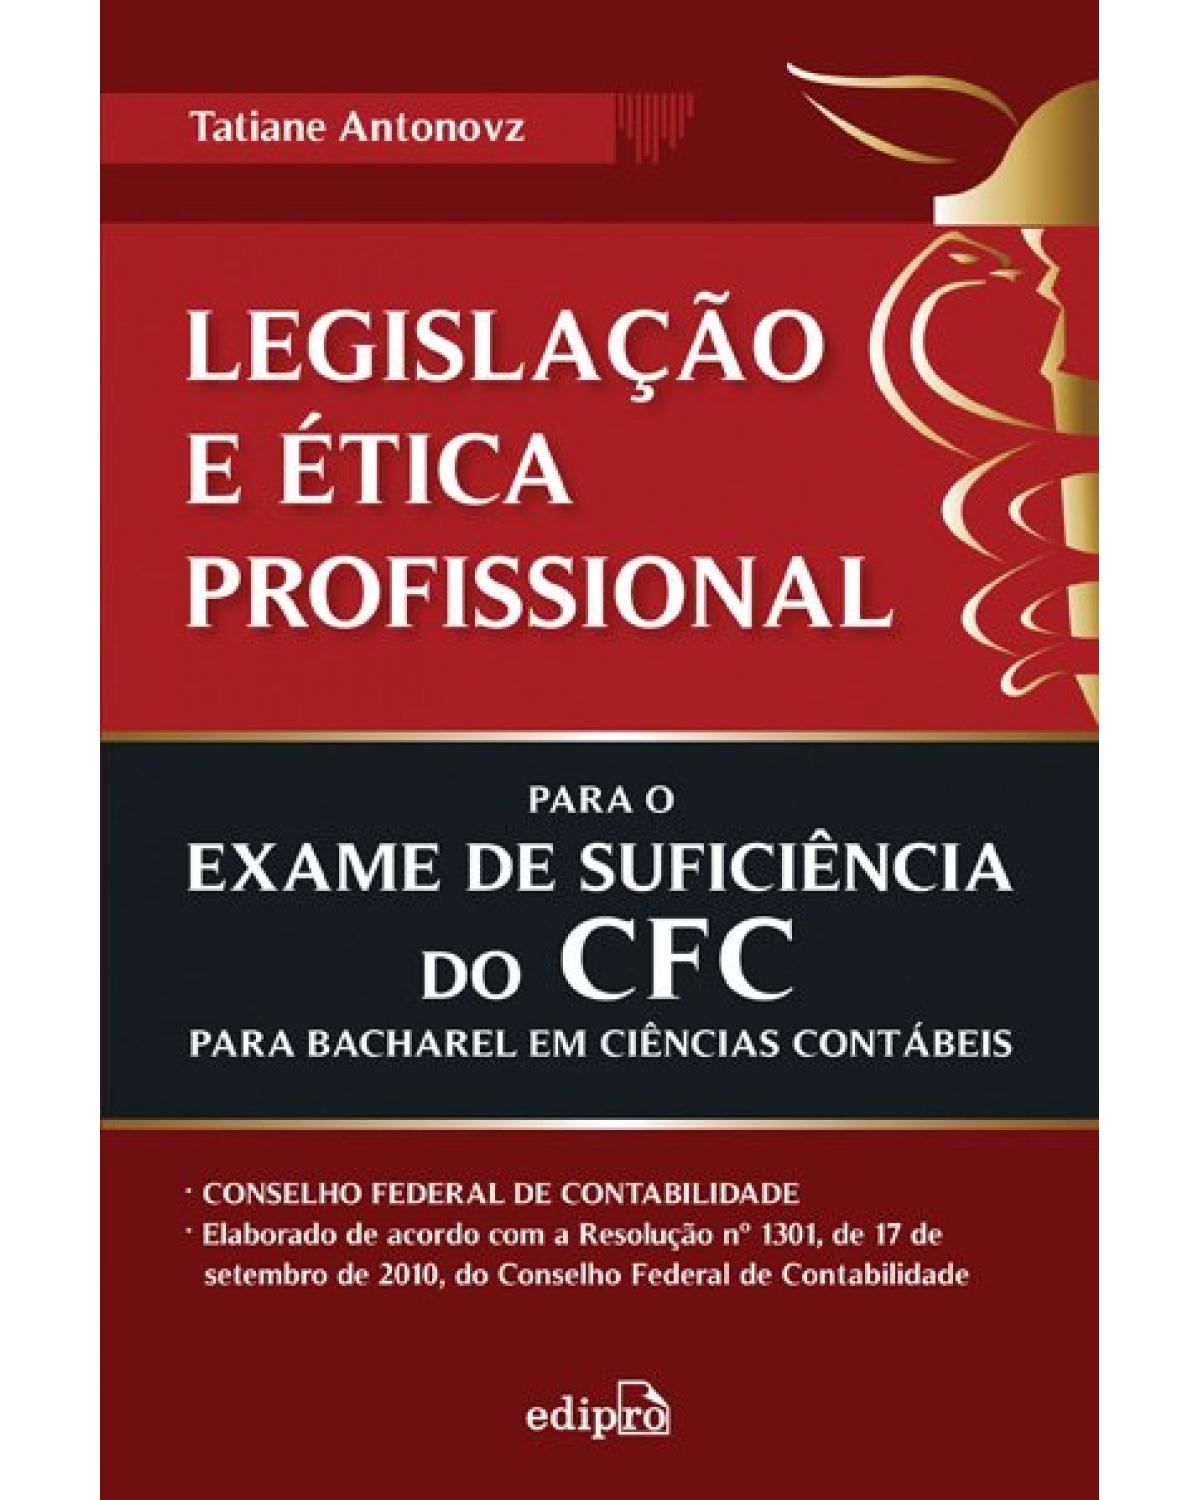 Legislação e ética profissional para o exame de suficiência do CFC para bacharel em ciências contábeis - 1ª Edição